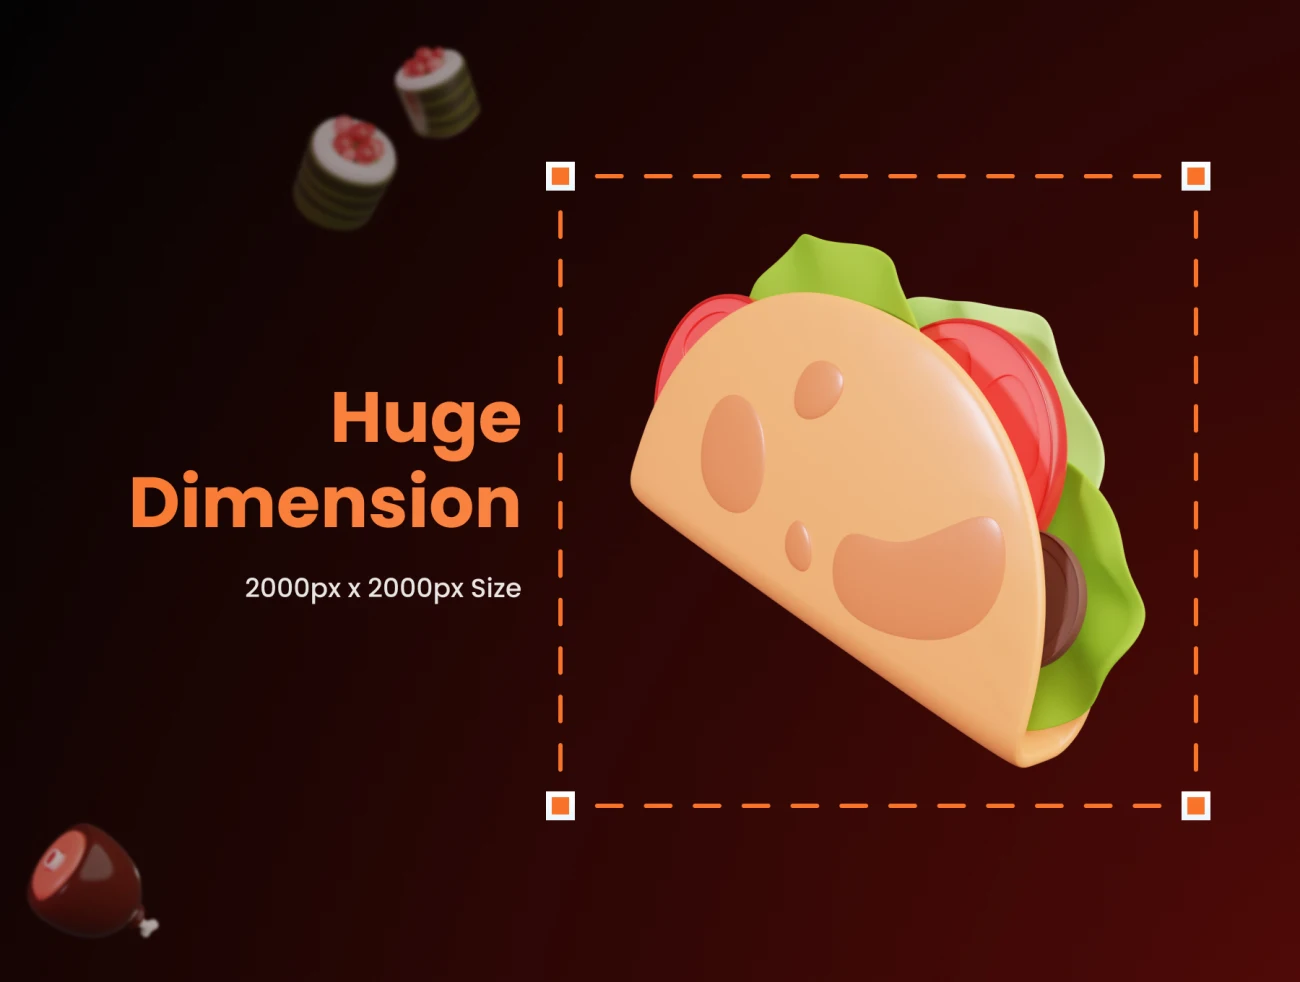 26款3D食品立体图标模型素材 Food Supplies 3D Icons .blender .psd插图11